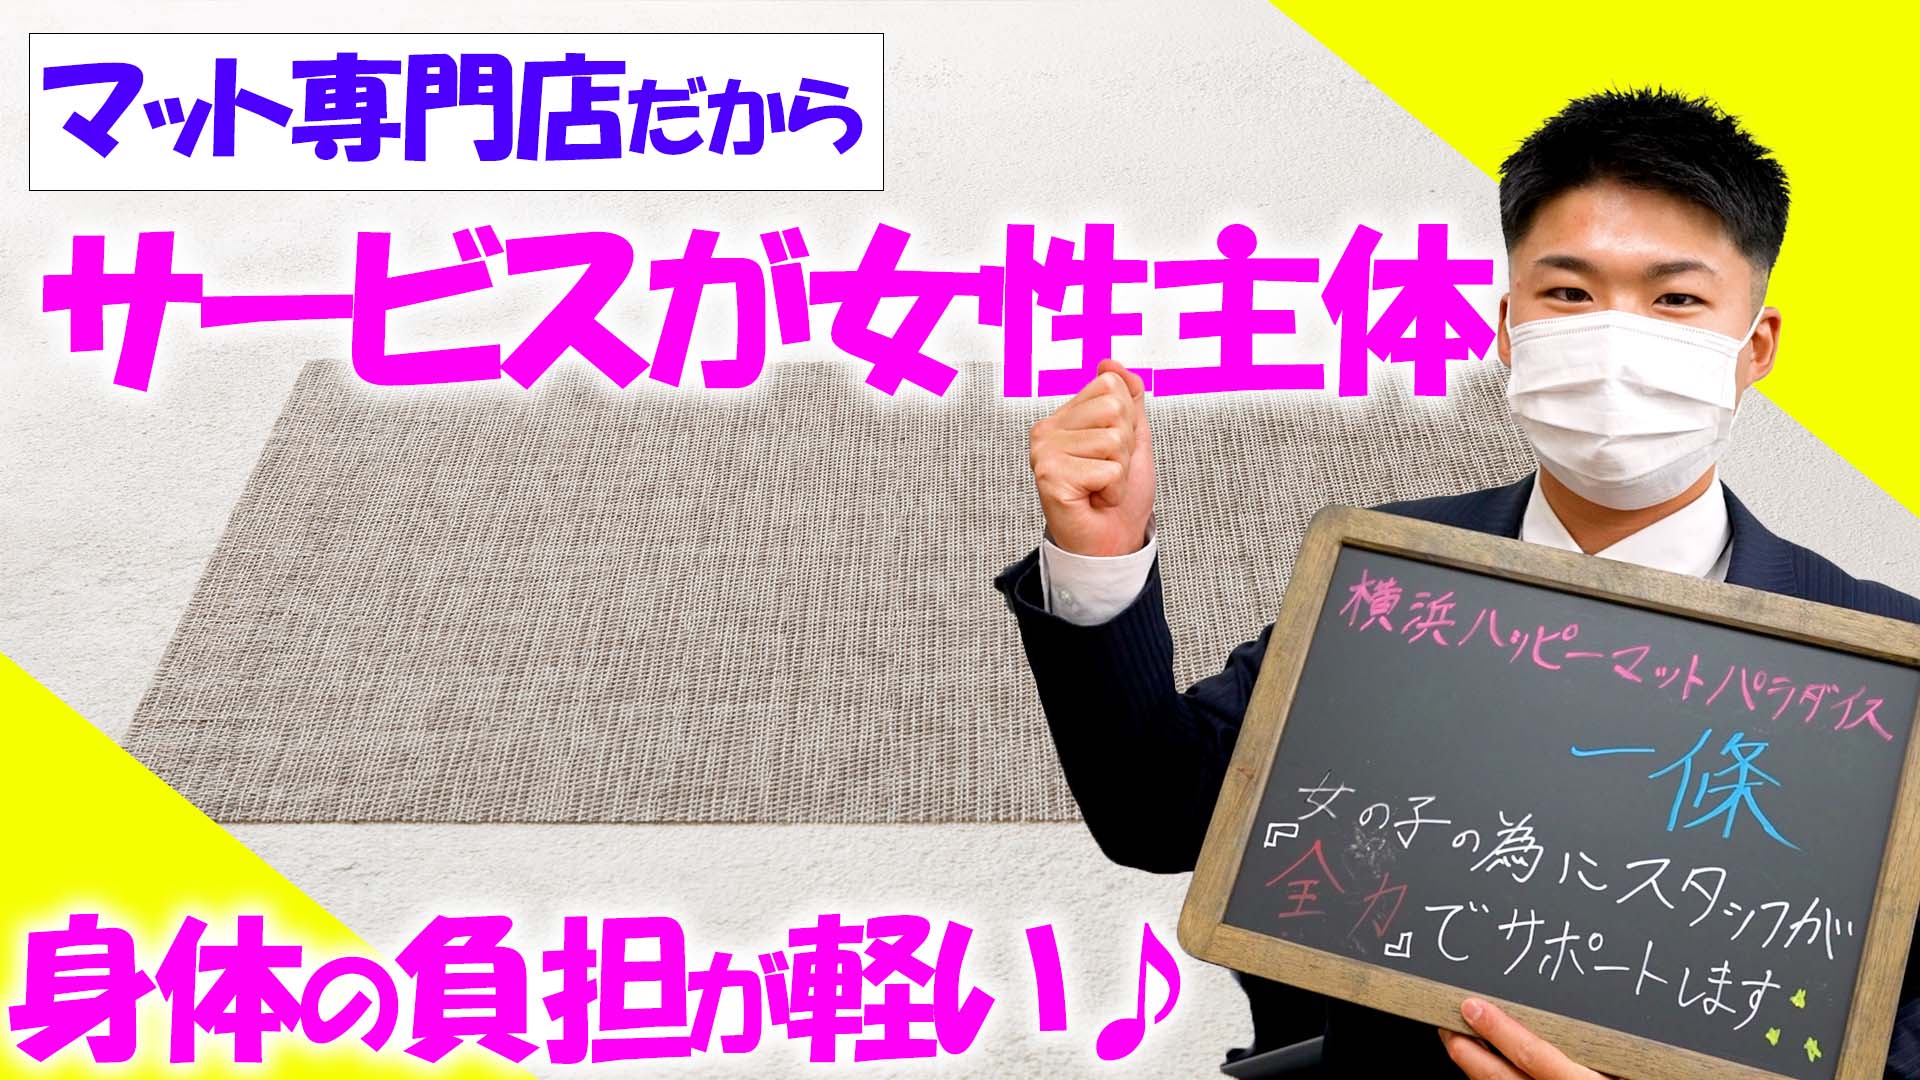 横浜ハッピーマットパラダイスのスタッフによるお仕事紹介動画